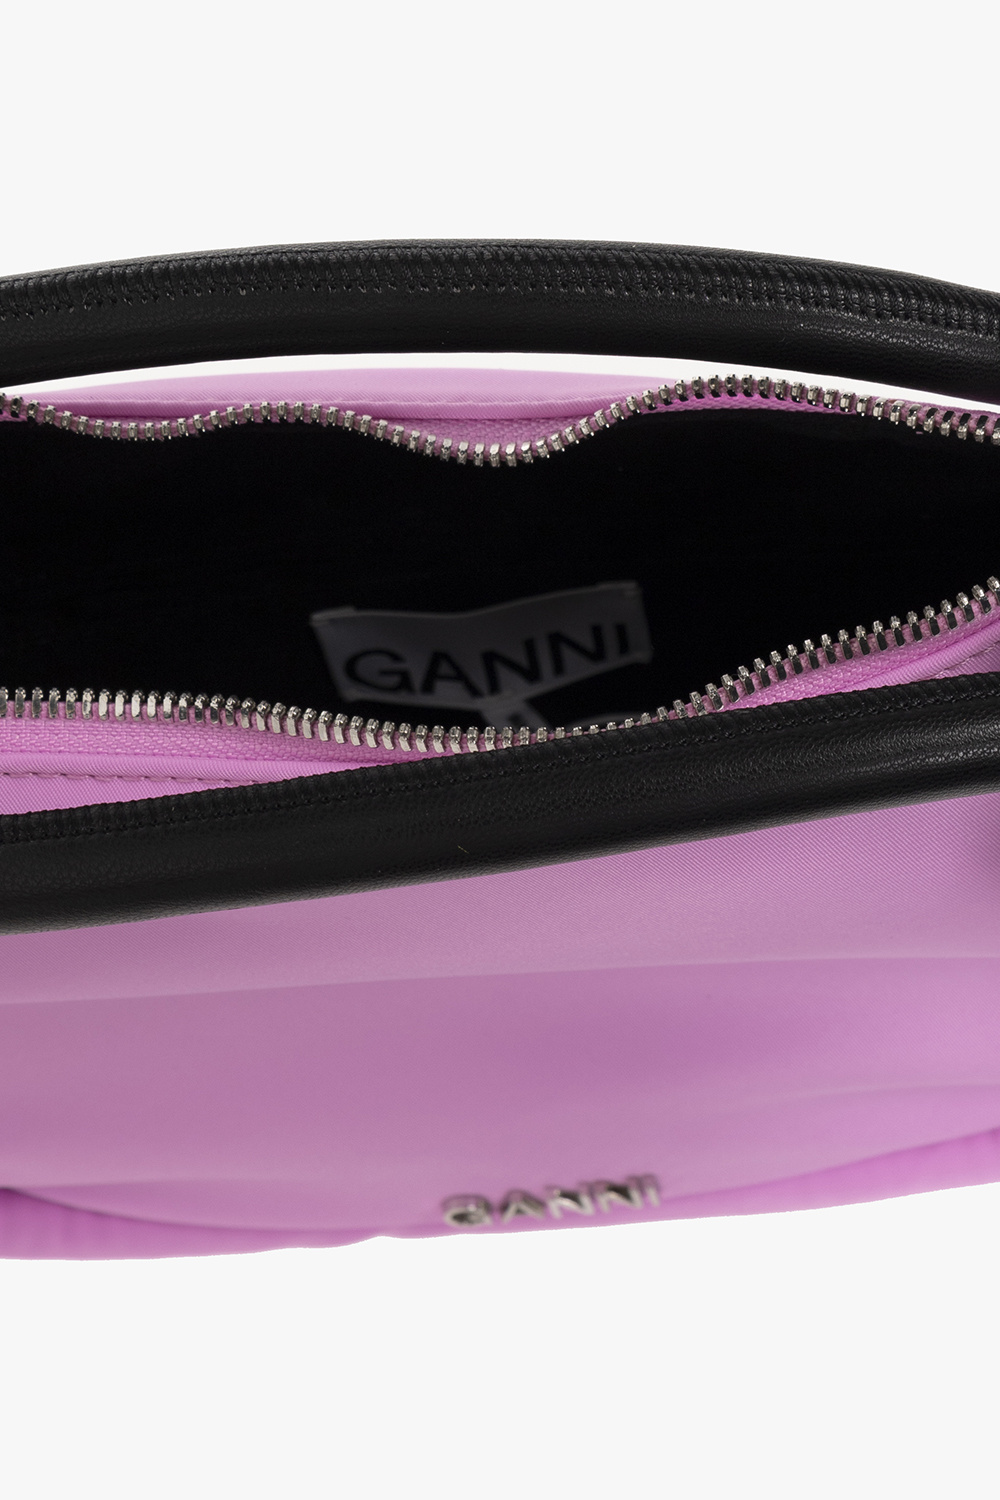 Ganni ‘Knot Mini’ shoulder girl bag